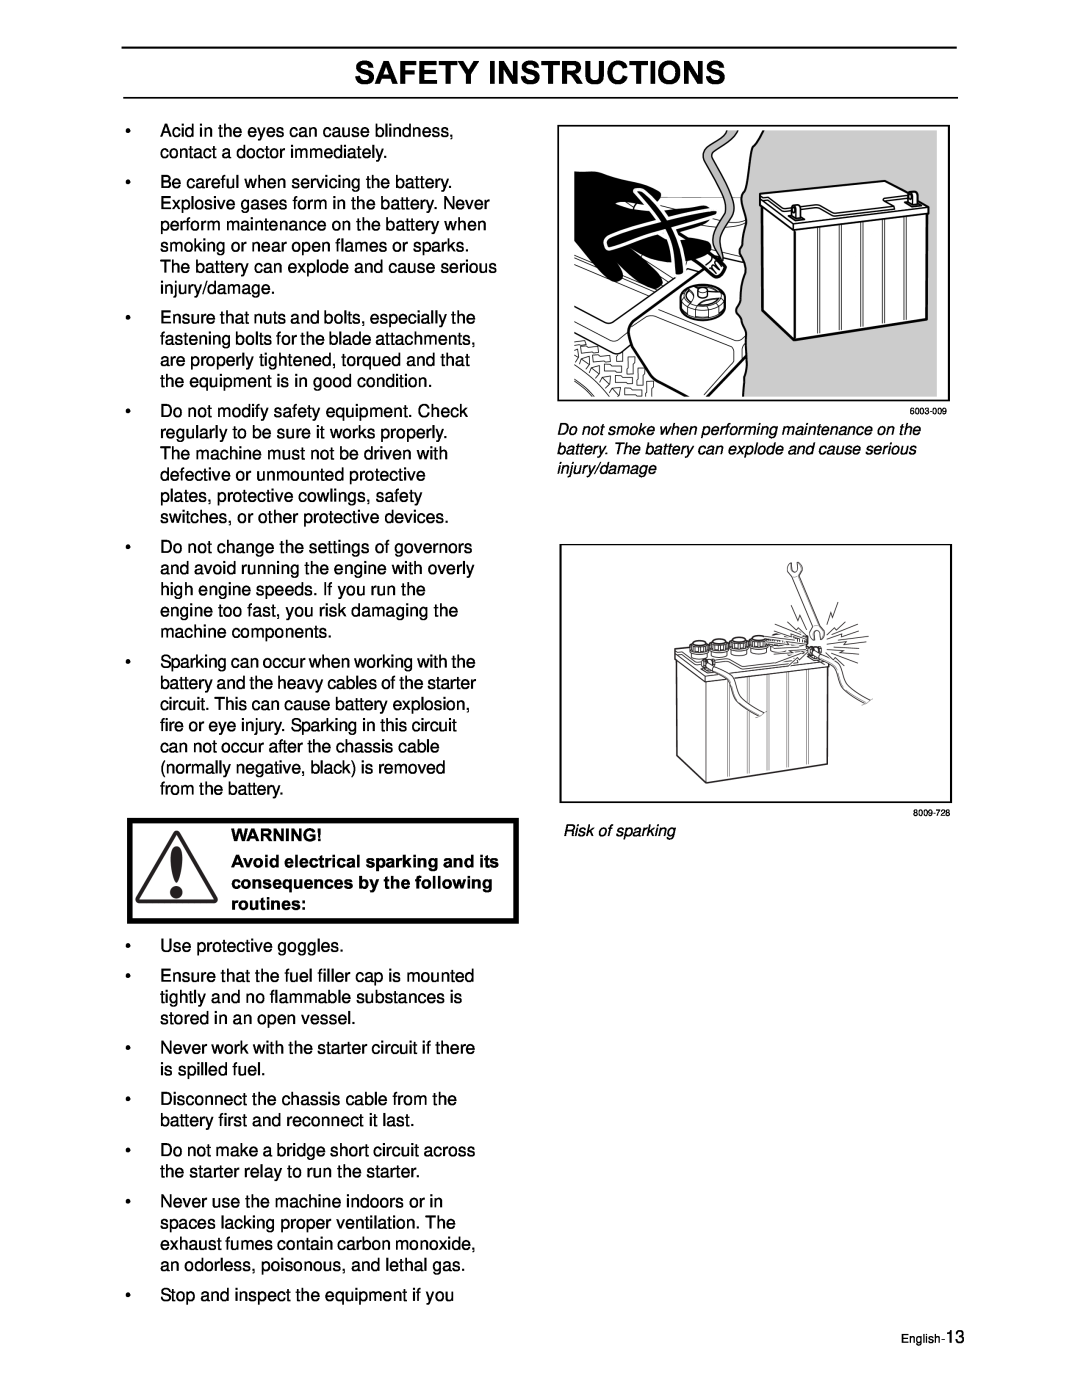 Yazoo/Kees ZEKH48240, ZEKH52240, ZEKH42200 manual Safety Instructions, Risk of sparking, English-13 